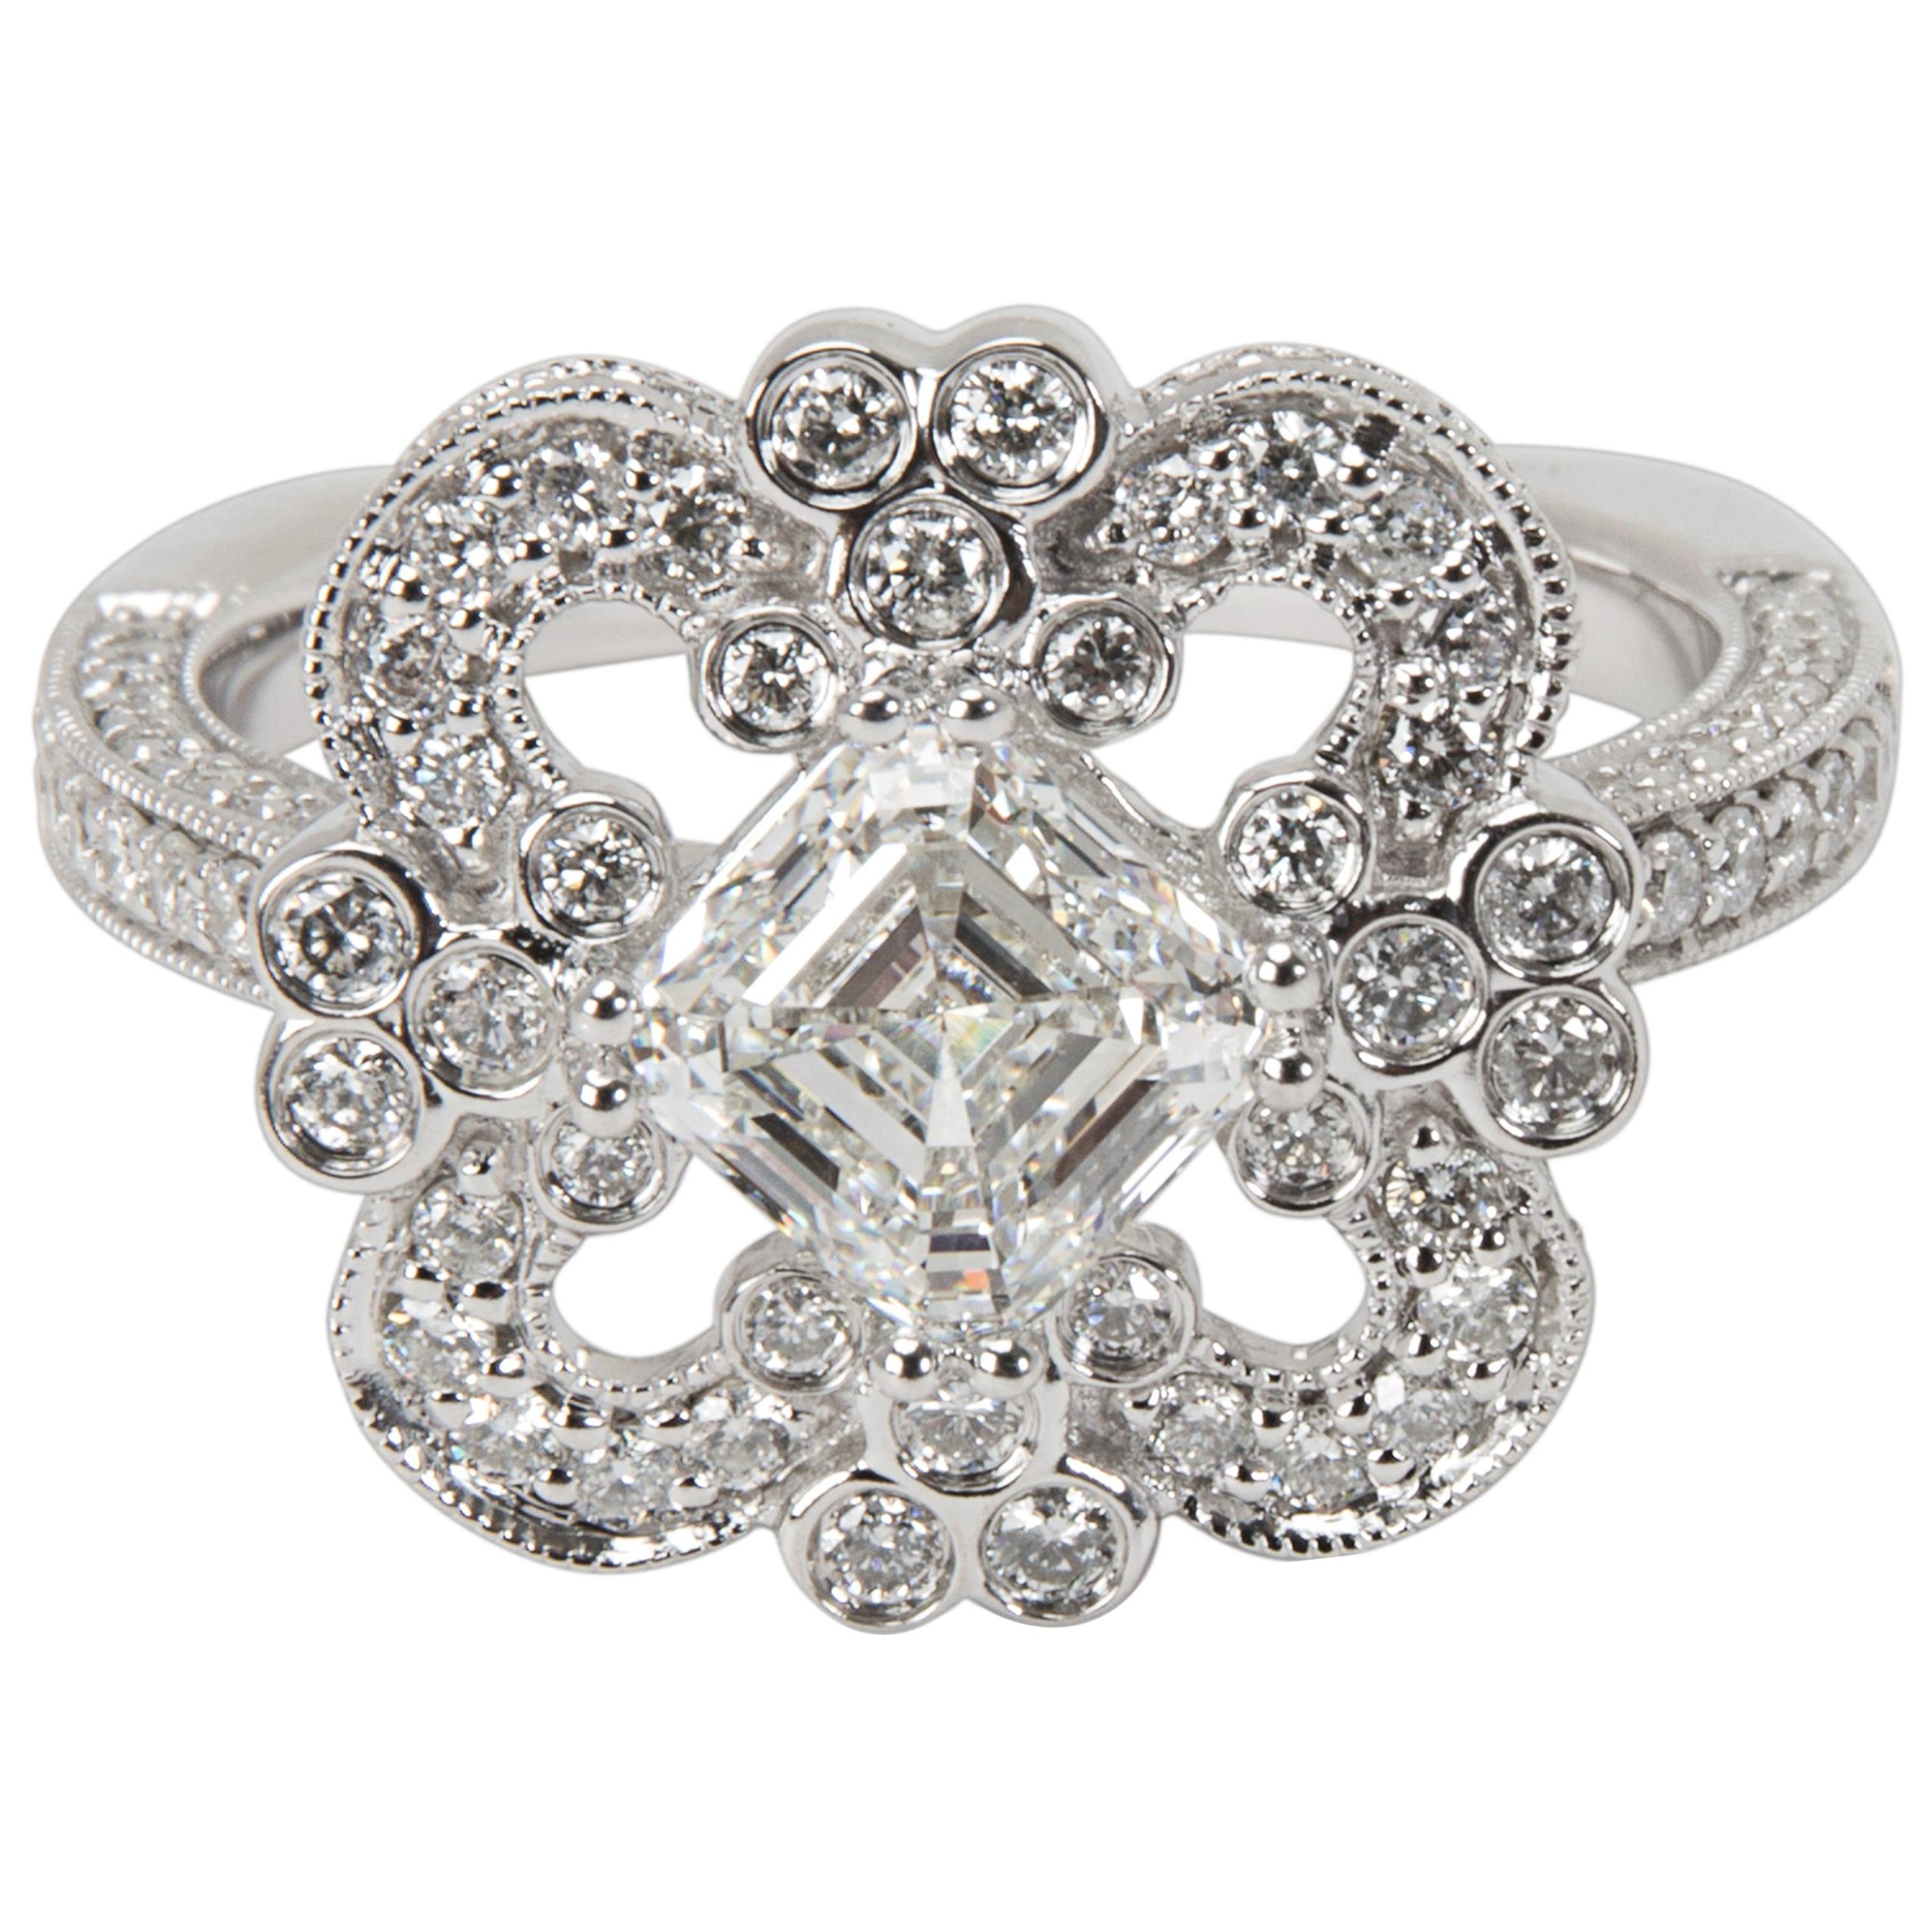 Tolkowsky Diamond Ring in 14 Karat White Gold GIA Certified G VVS1 '2.20 Carat'